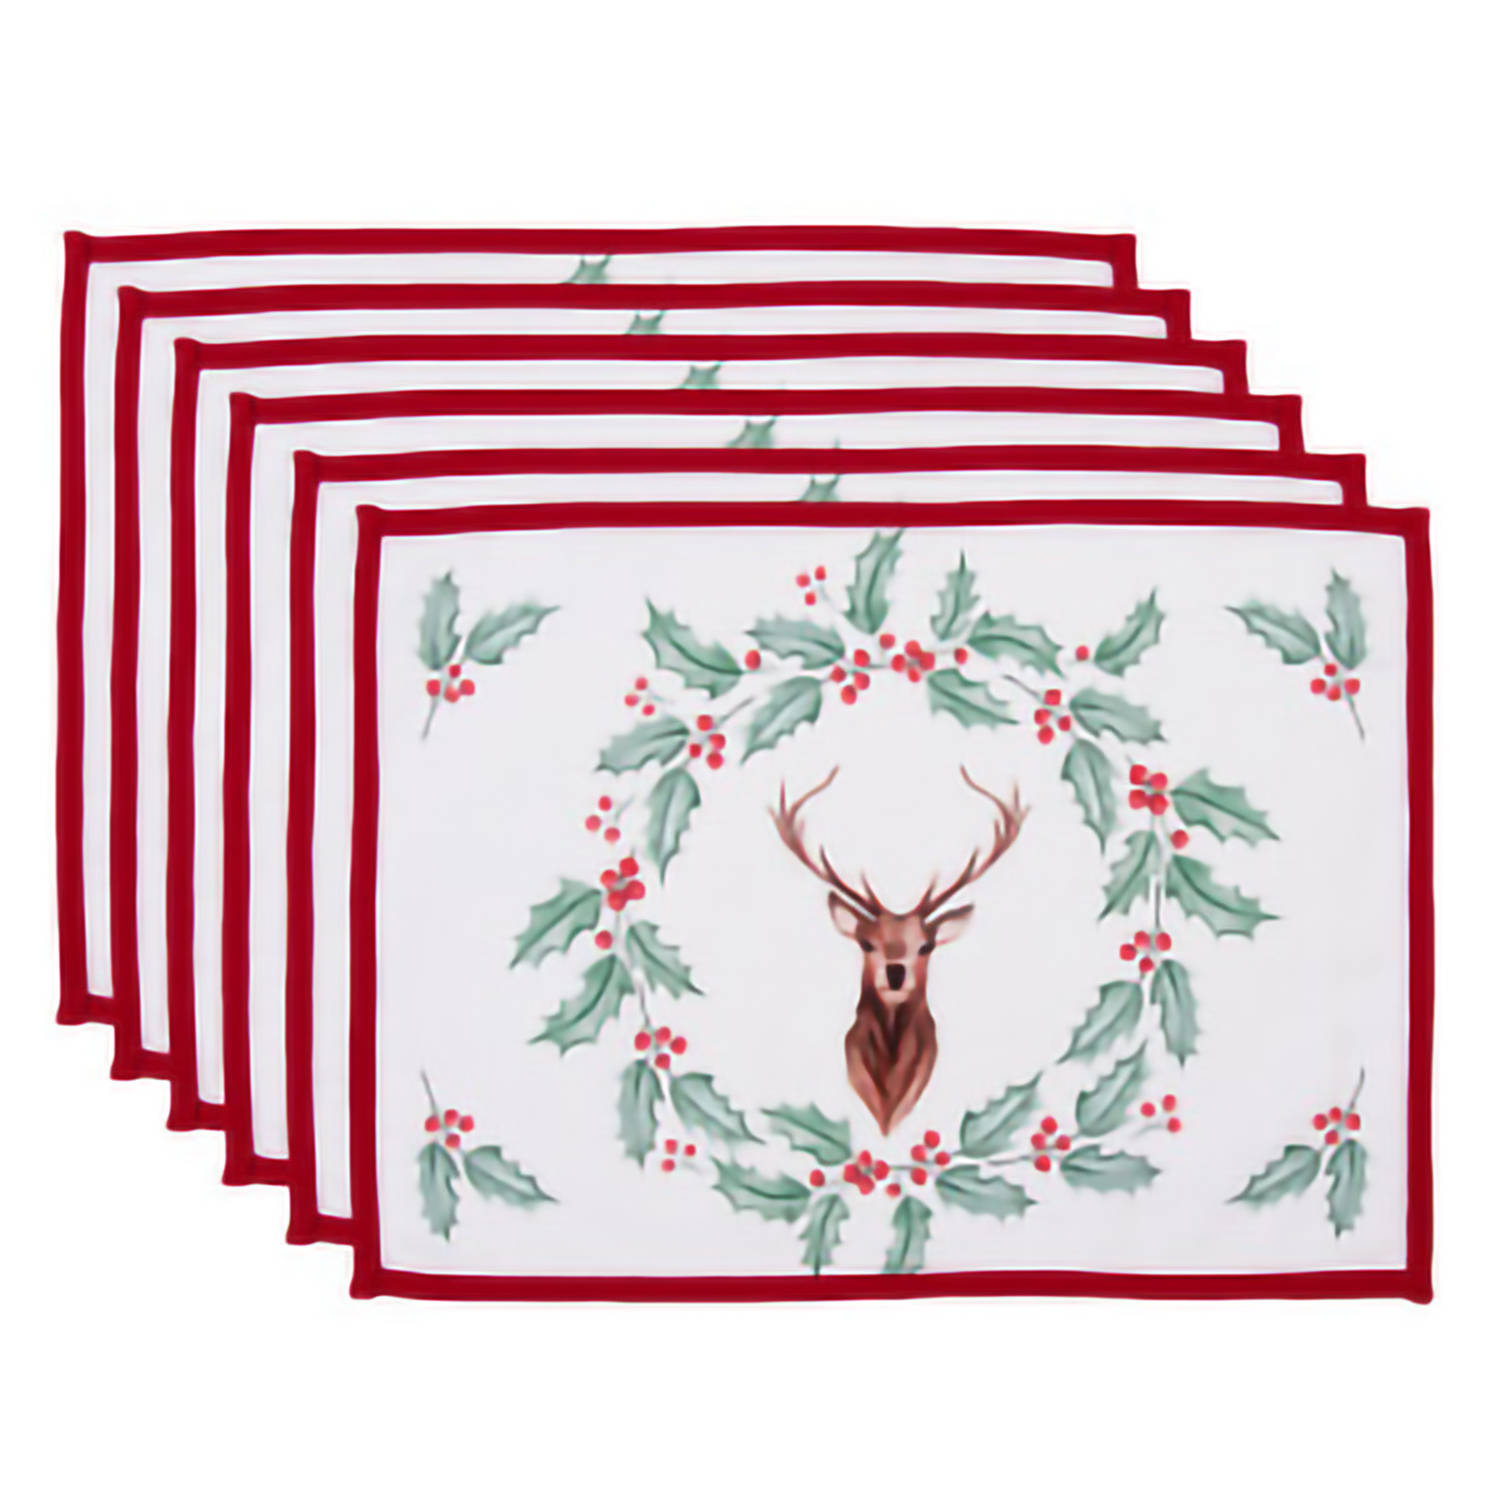 HAES DECO - Set van 6 Placemats - formaat 48x33 cm - kleuren Wit / Rood / Bruin / Groen - van 100% Katoen - Collectie: Holly Christmas - Kerst Placemats